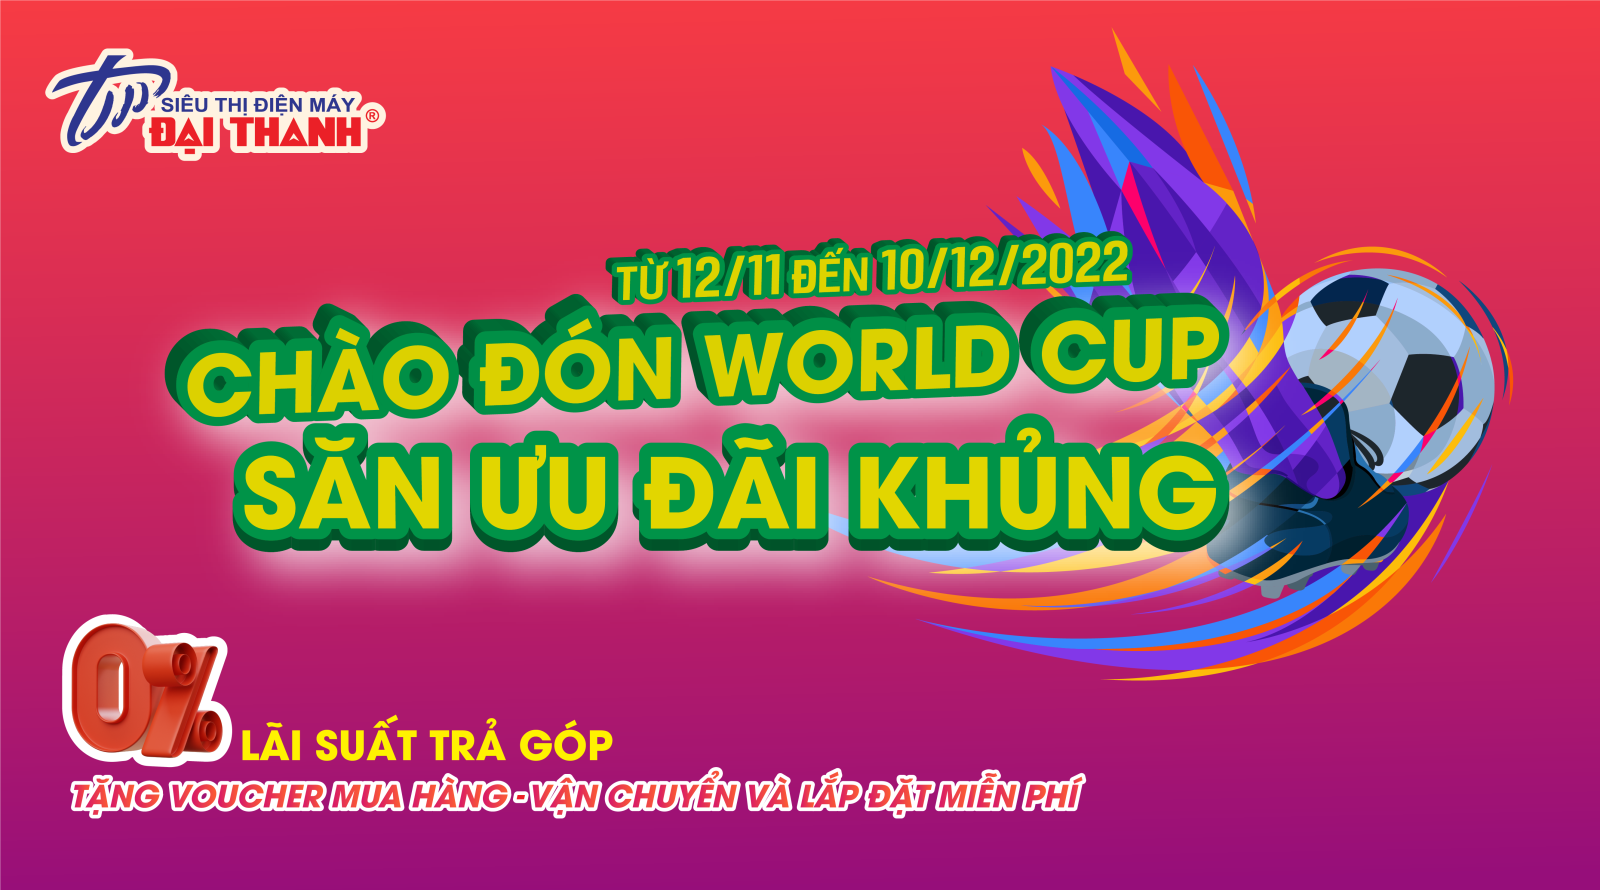 CHÀO ĐÓN WORLD CUP - SĂN ƯU ĐÃI KHỦNG